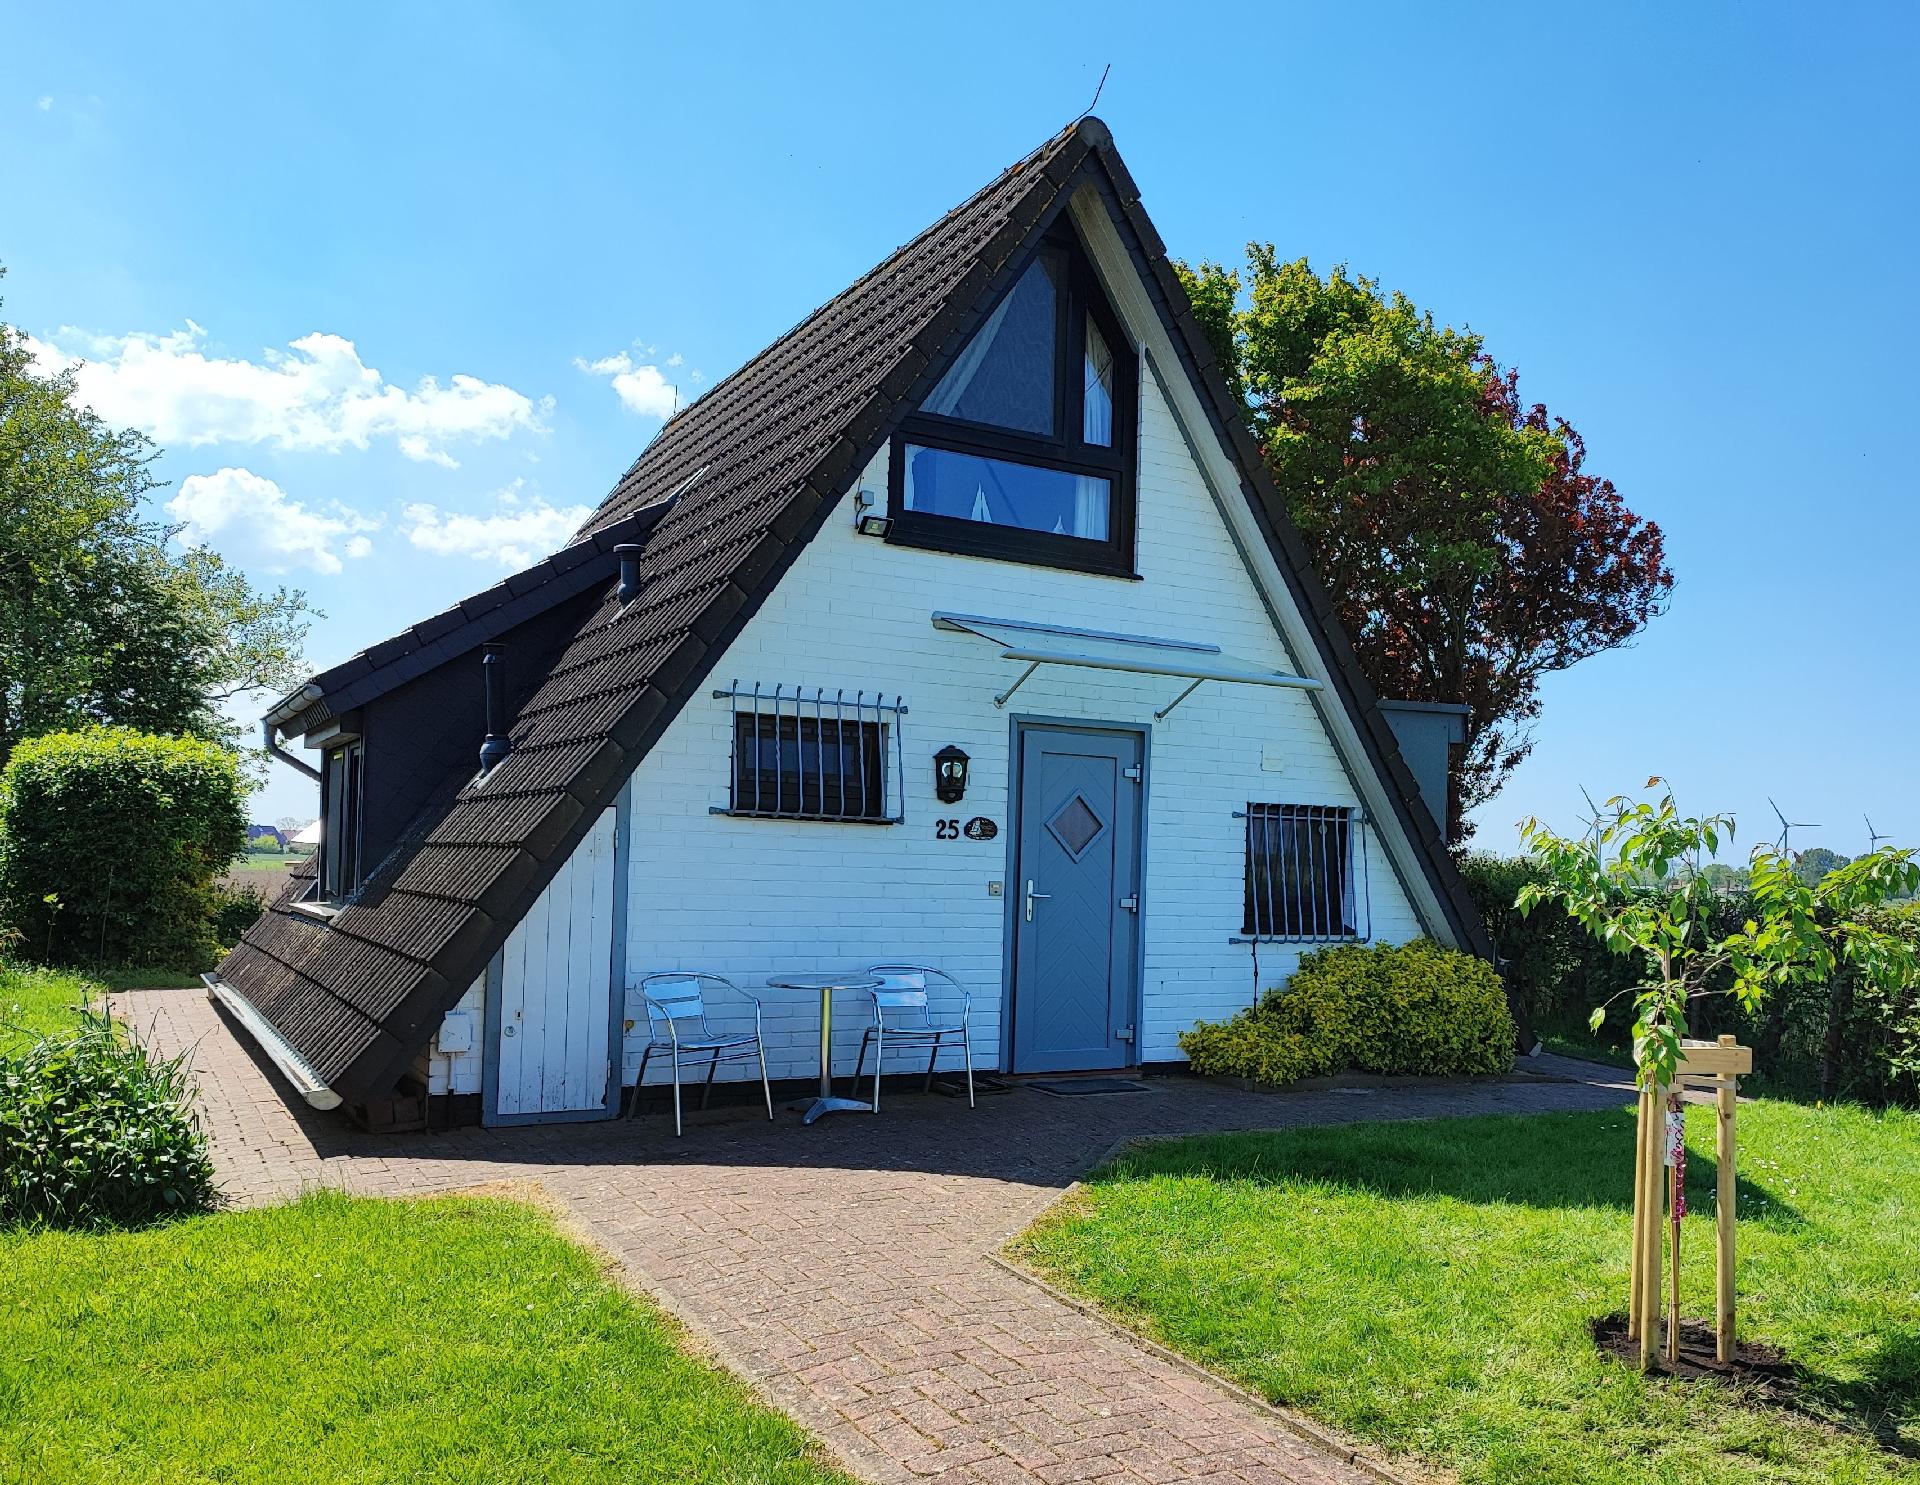 Ferienhaus mit Terrasse und Garten in einer Anlage Ferienhaus in Niedersachsen